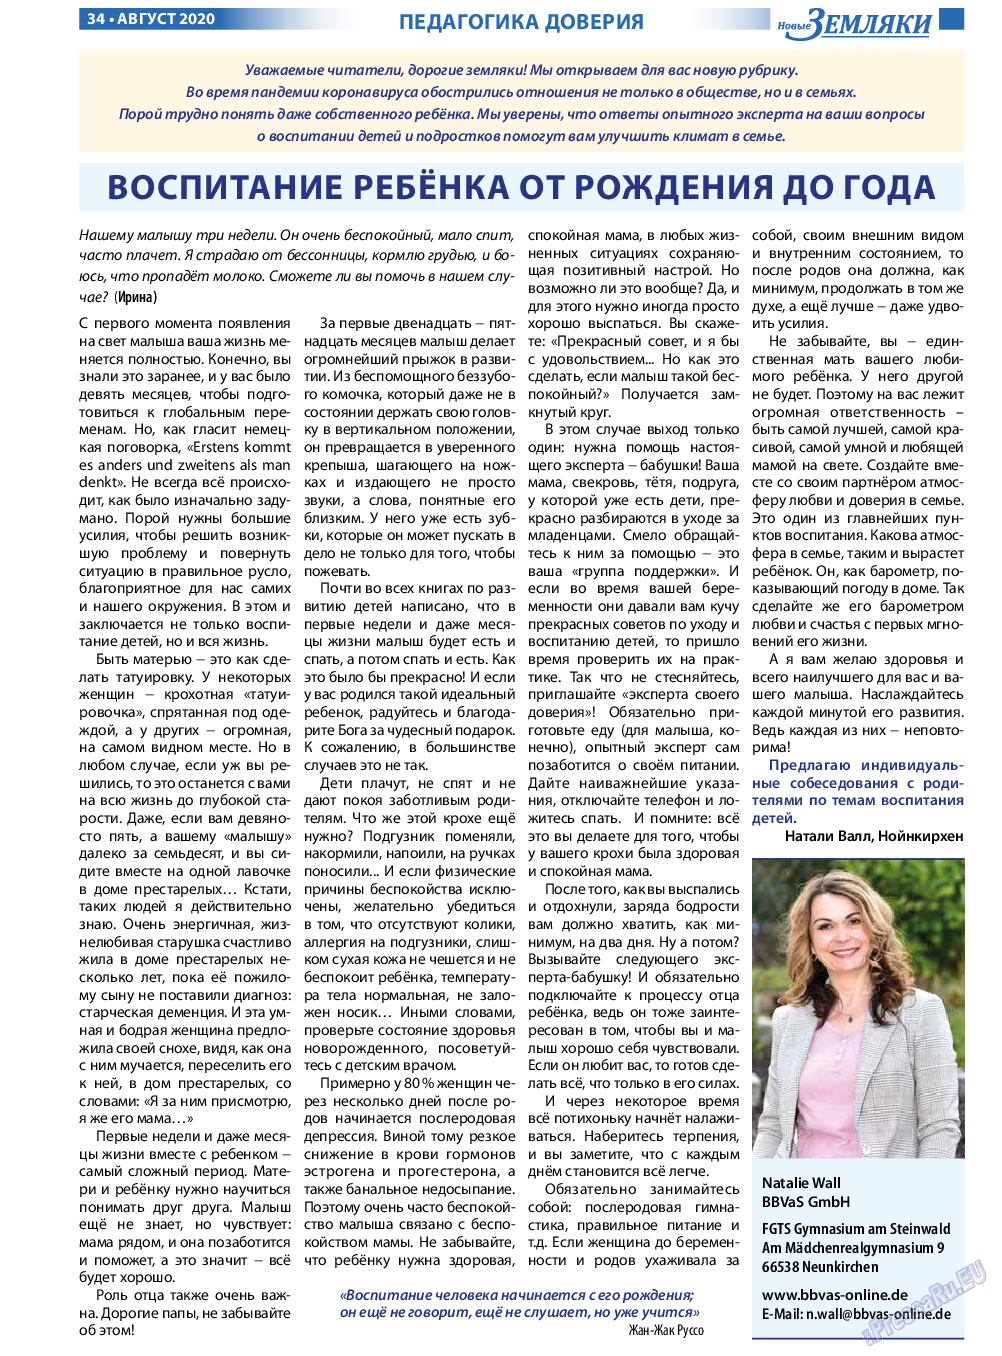 Новые Земляки (газета). 2020 год, номер 8, стр. 34